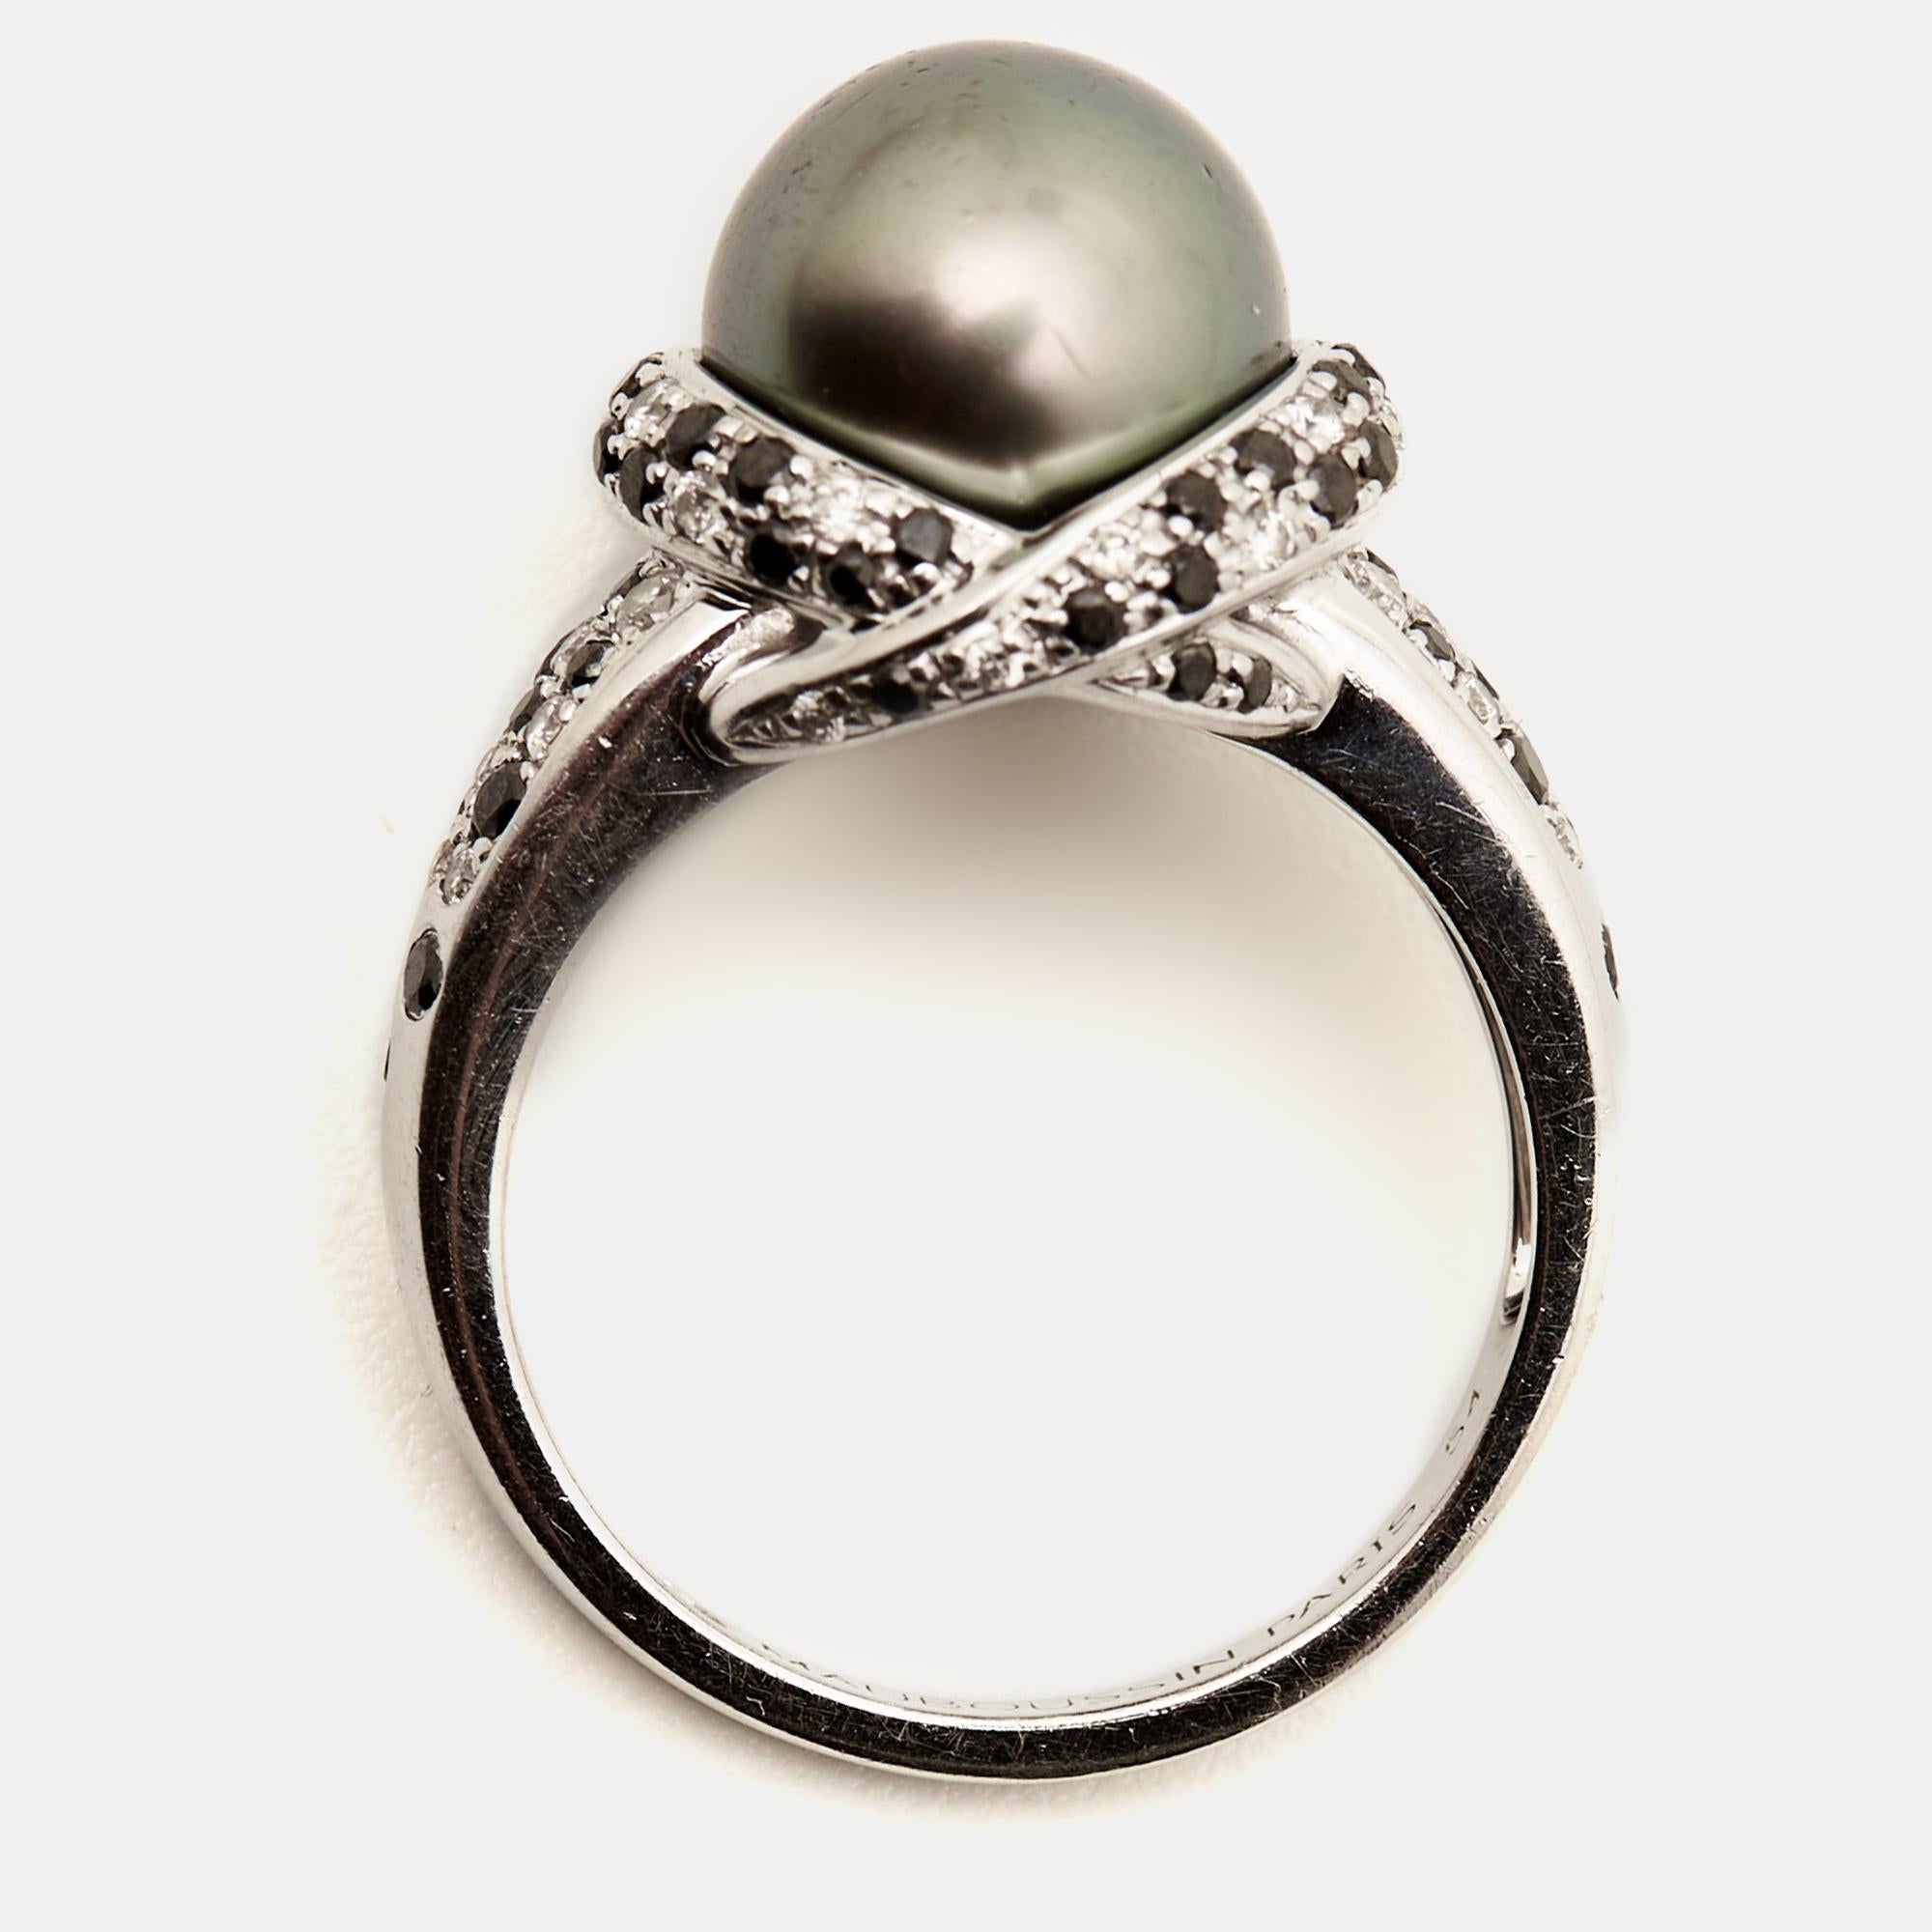 Découvrez l'incarnation du luxe et de l'artisanat avec cette bague en perles de Mauboussin méticuleusement conçue. Son élégance intemporelle et ses détails exceptionnels en font une pièce de choix pour toutes les occasions.

